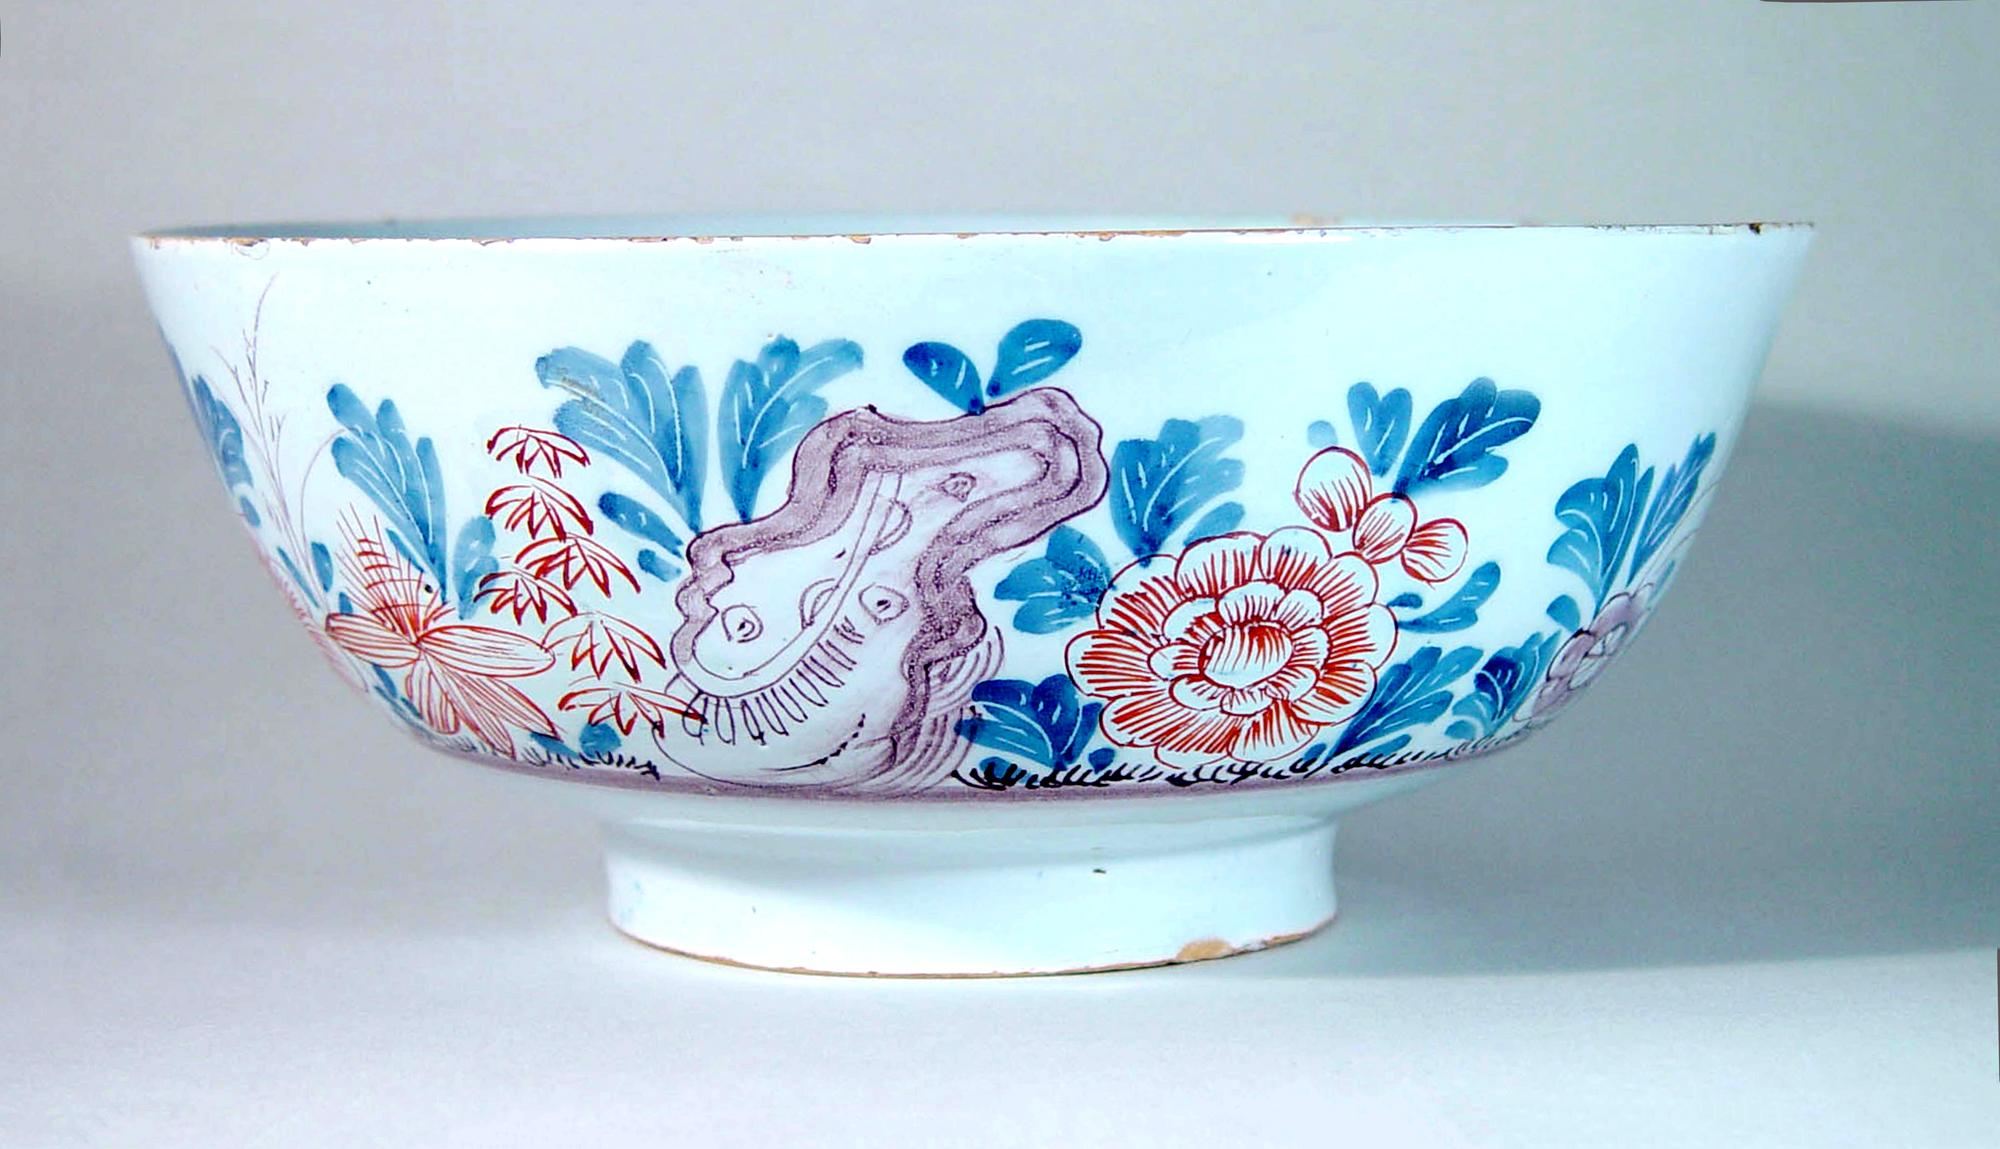 Bol en porcelaine de Delft polychrome de style chinoiserie anglaise,
Bristol,
Circa 1760

La coupe est ornée d'une représentation de fleurs et de plantes de la Chinoiserie et de rocailles en rouge fer, bleu et manganèse. La scène se déroule sur